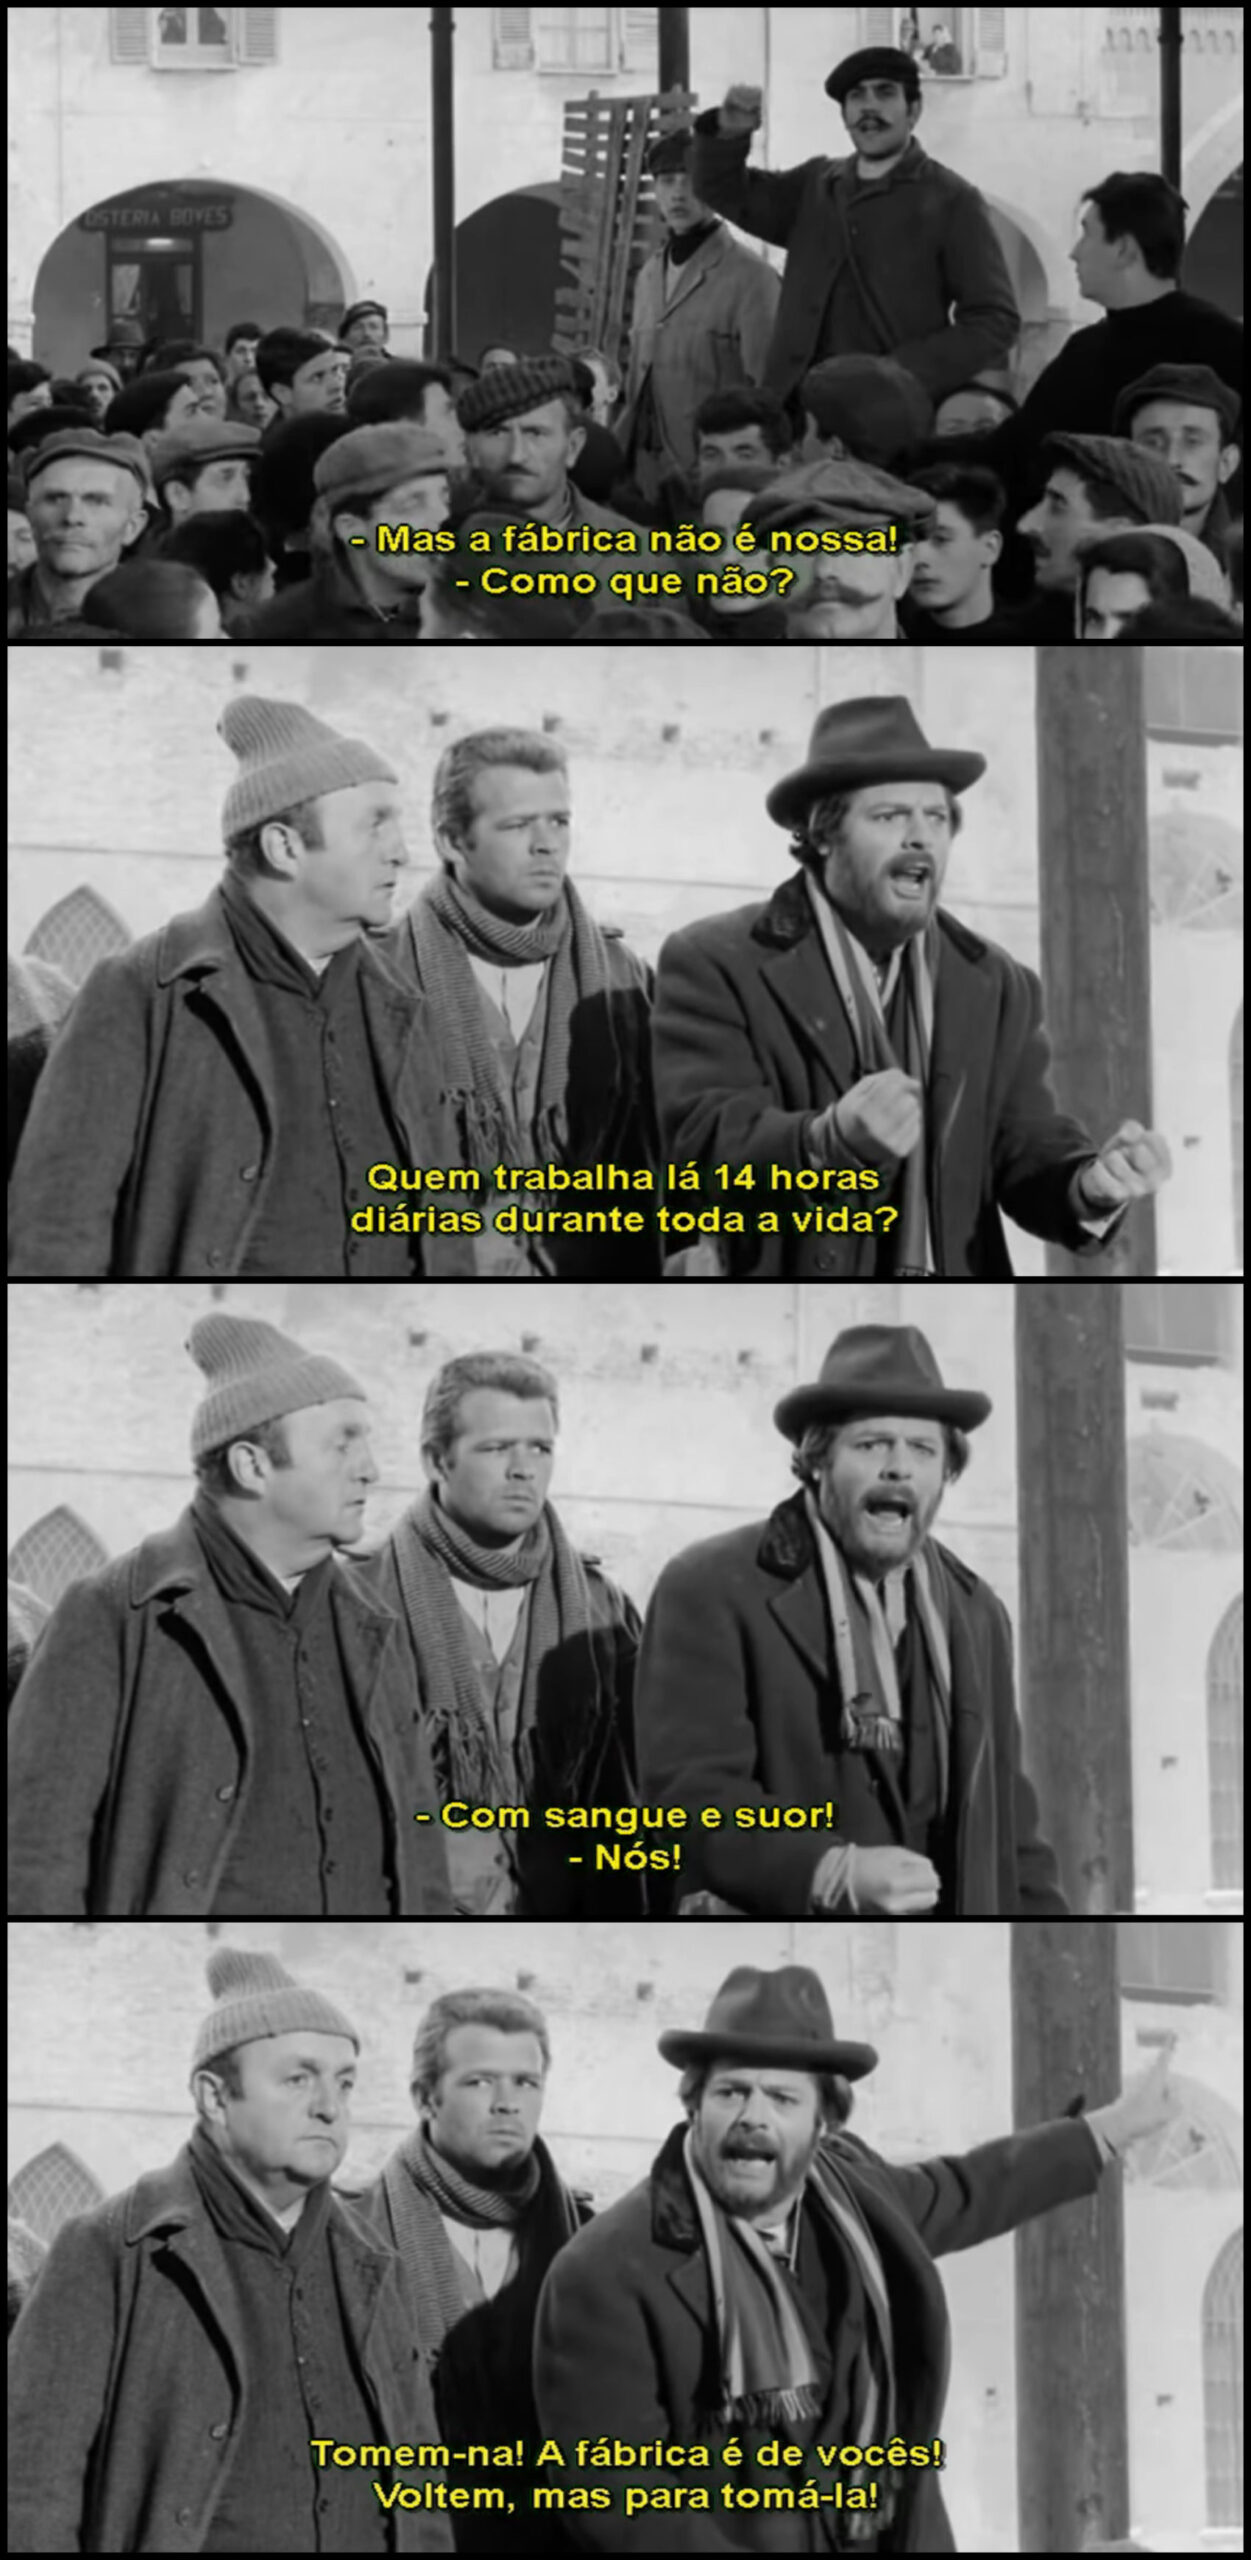 Extrato do filme "Os companheiros" (1963), de Mario Monicelli. Imagem: Reprodução